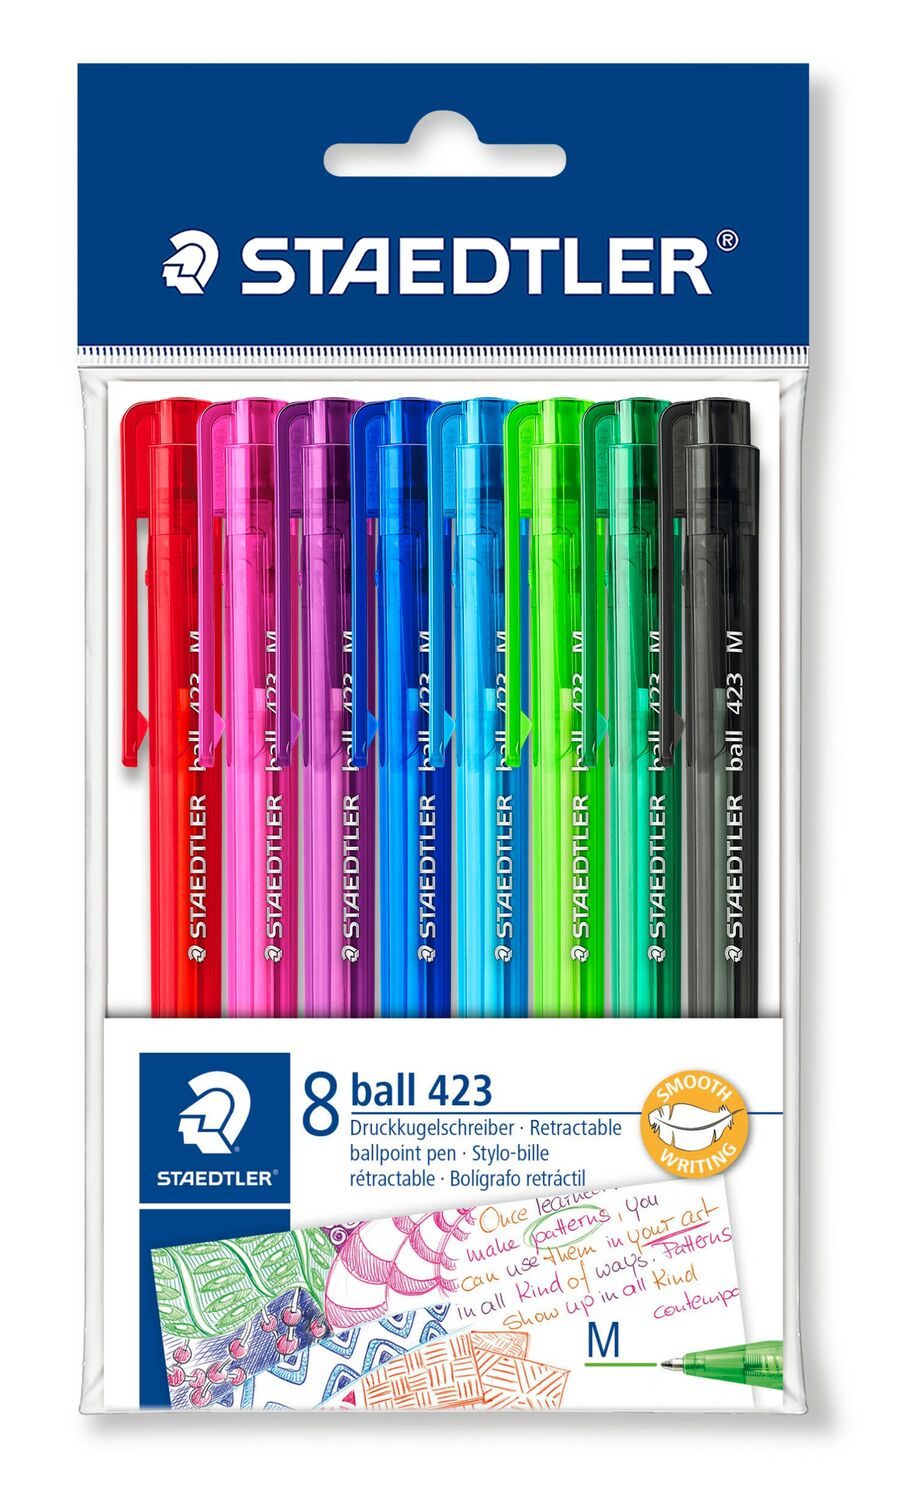 ball 423 - Triangular ballpoint pen